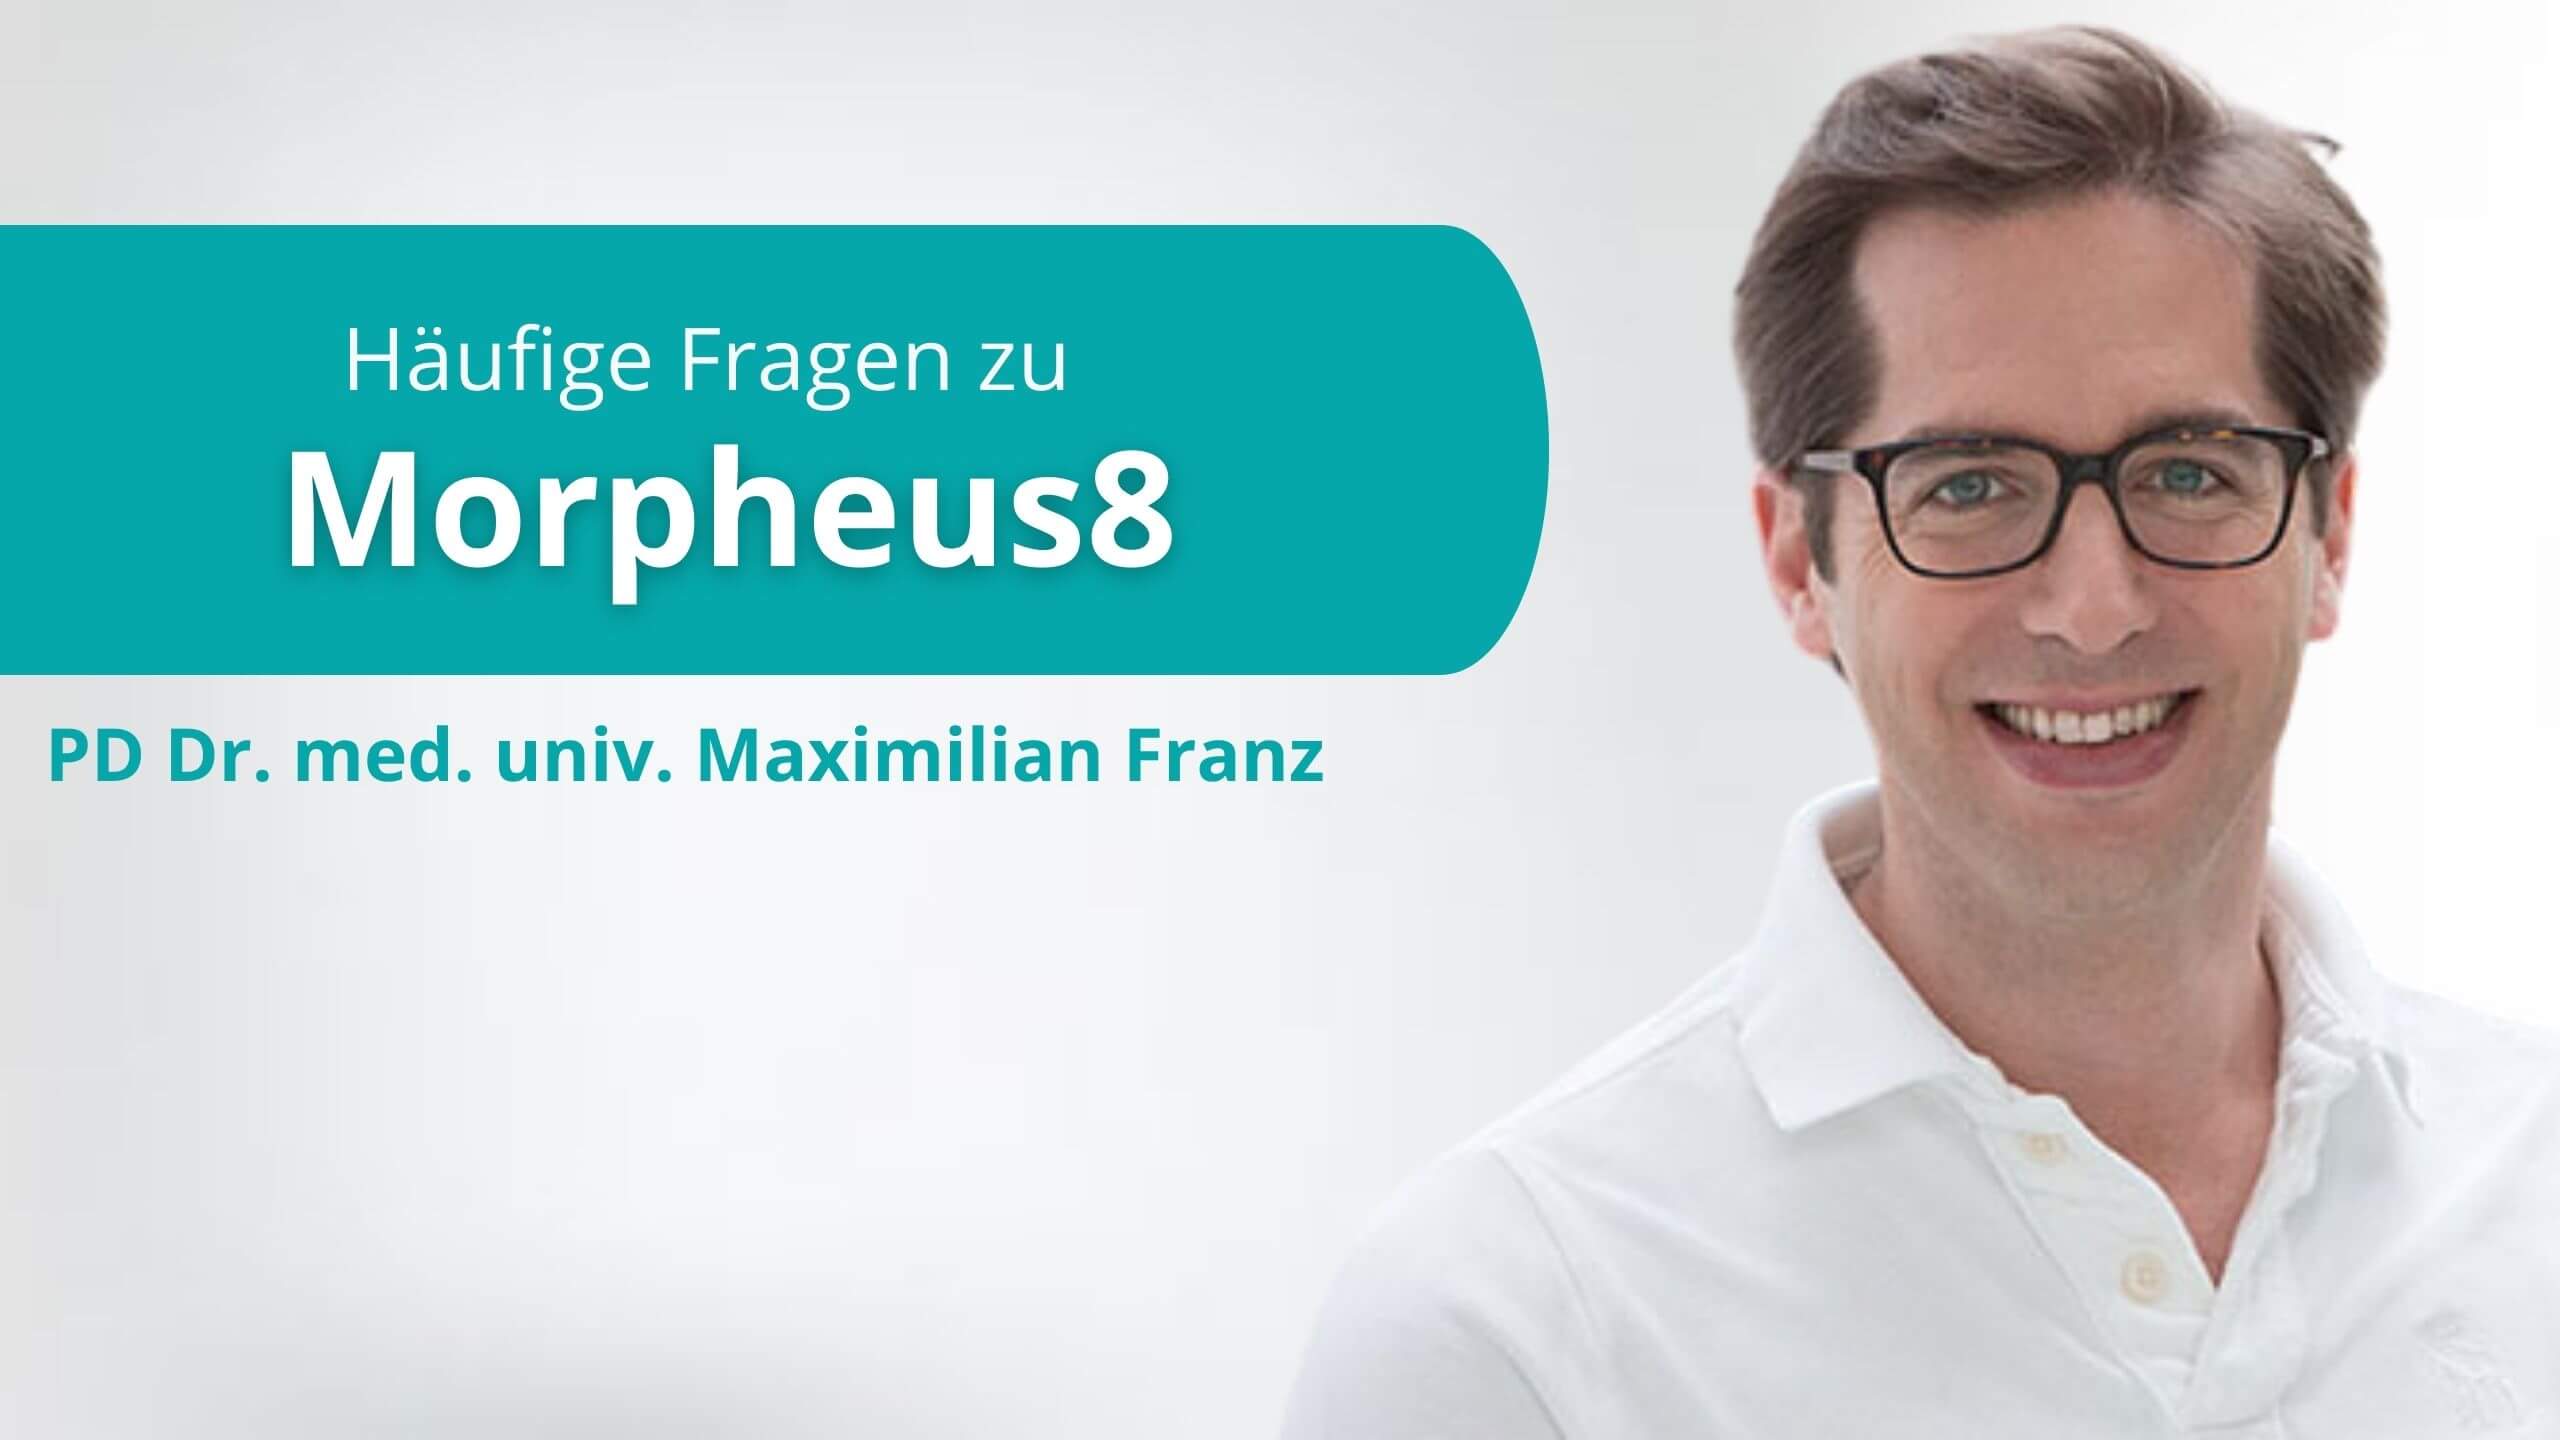 Morpheus8 München, Gynäkologe Dr. Franz